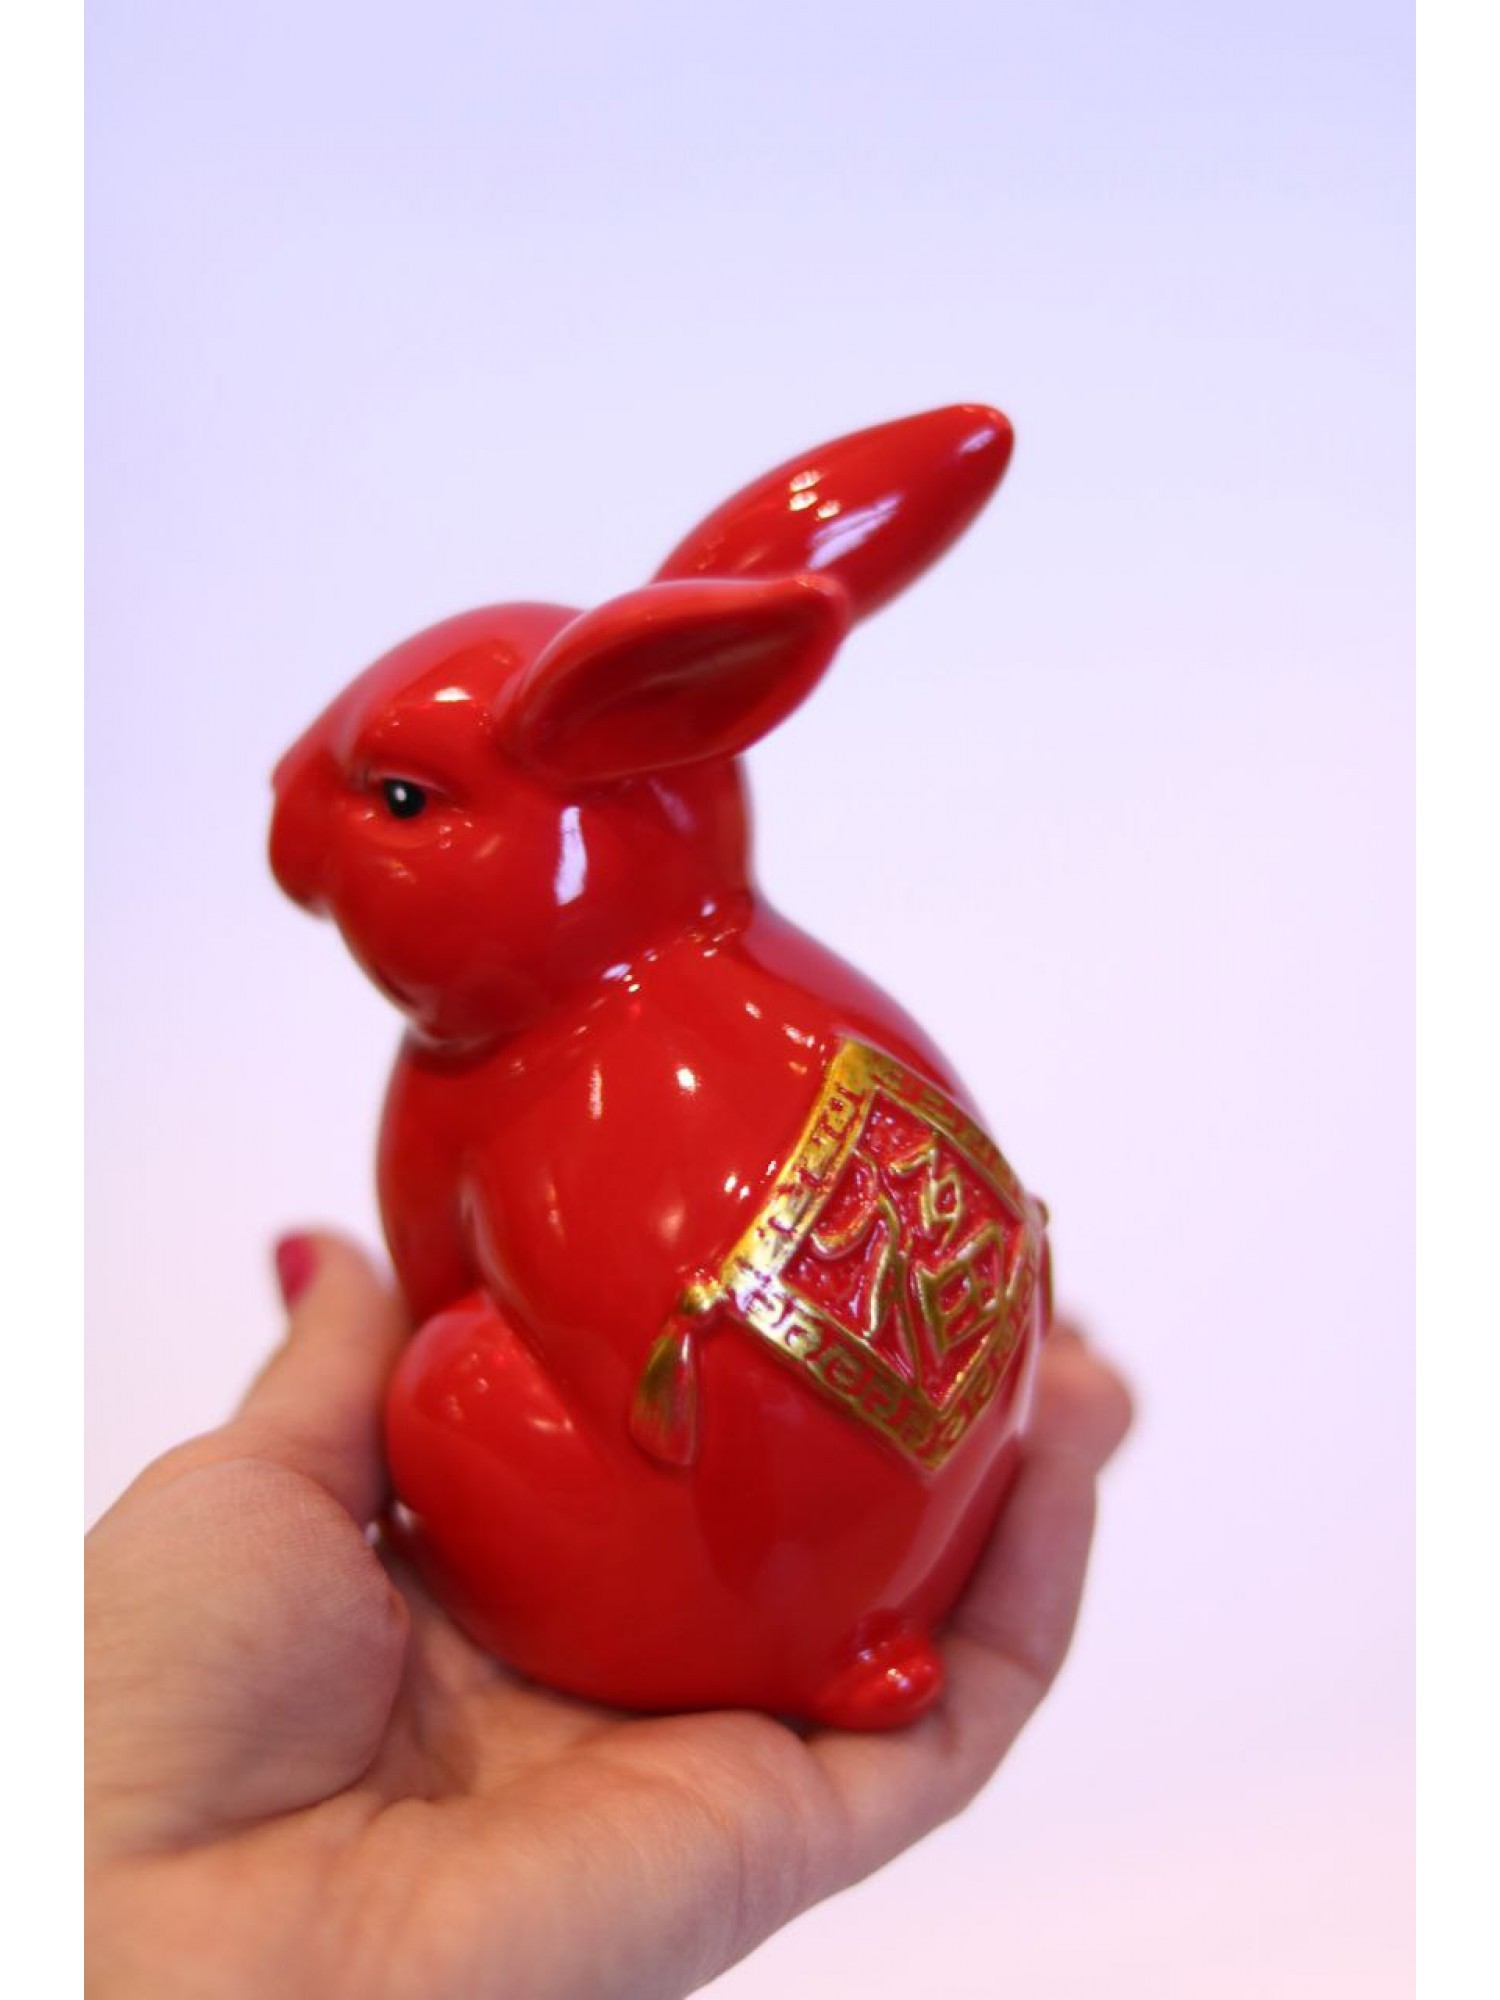 Статуэтка «Кролик» красный сидячий (фарфор) - символ 2023 года, дарит любовь и семейную жизнь!